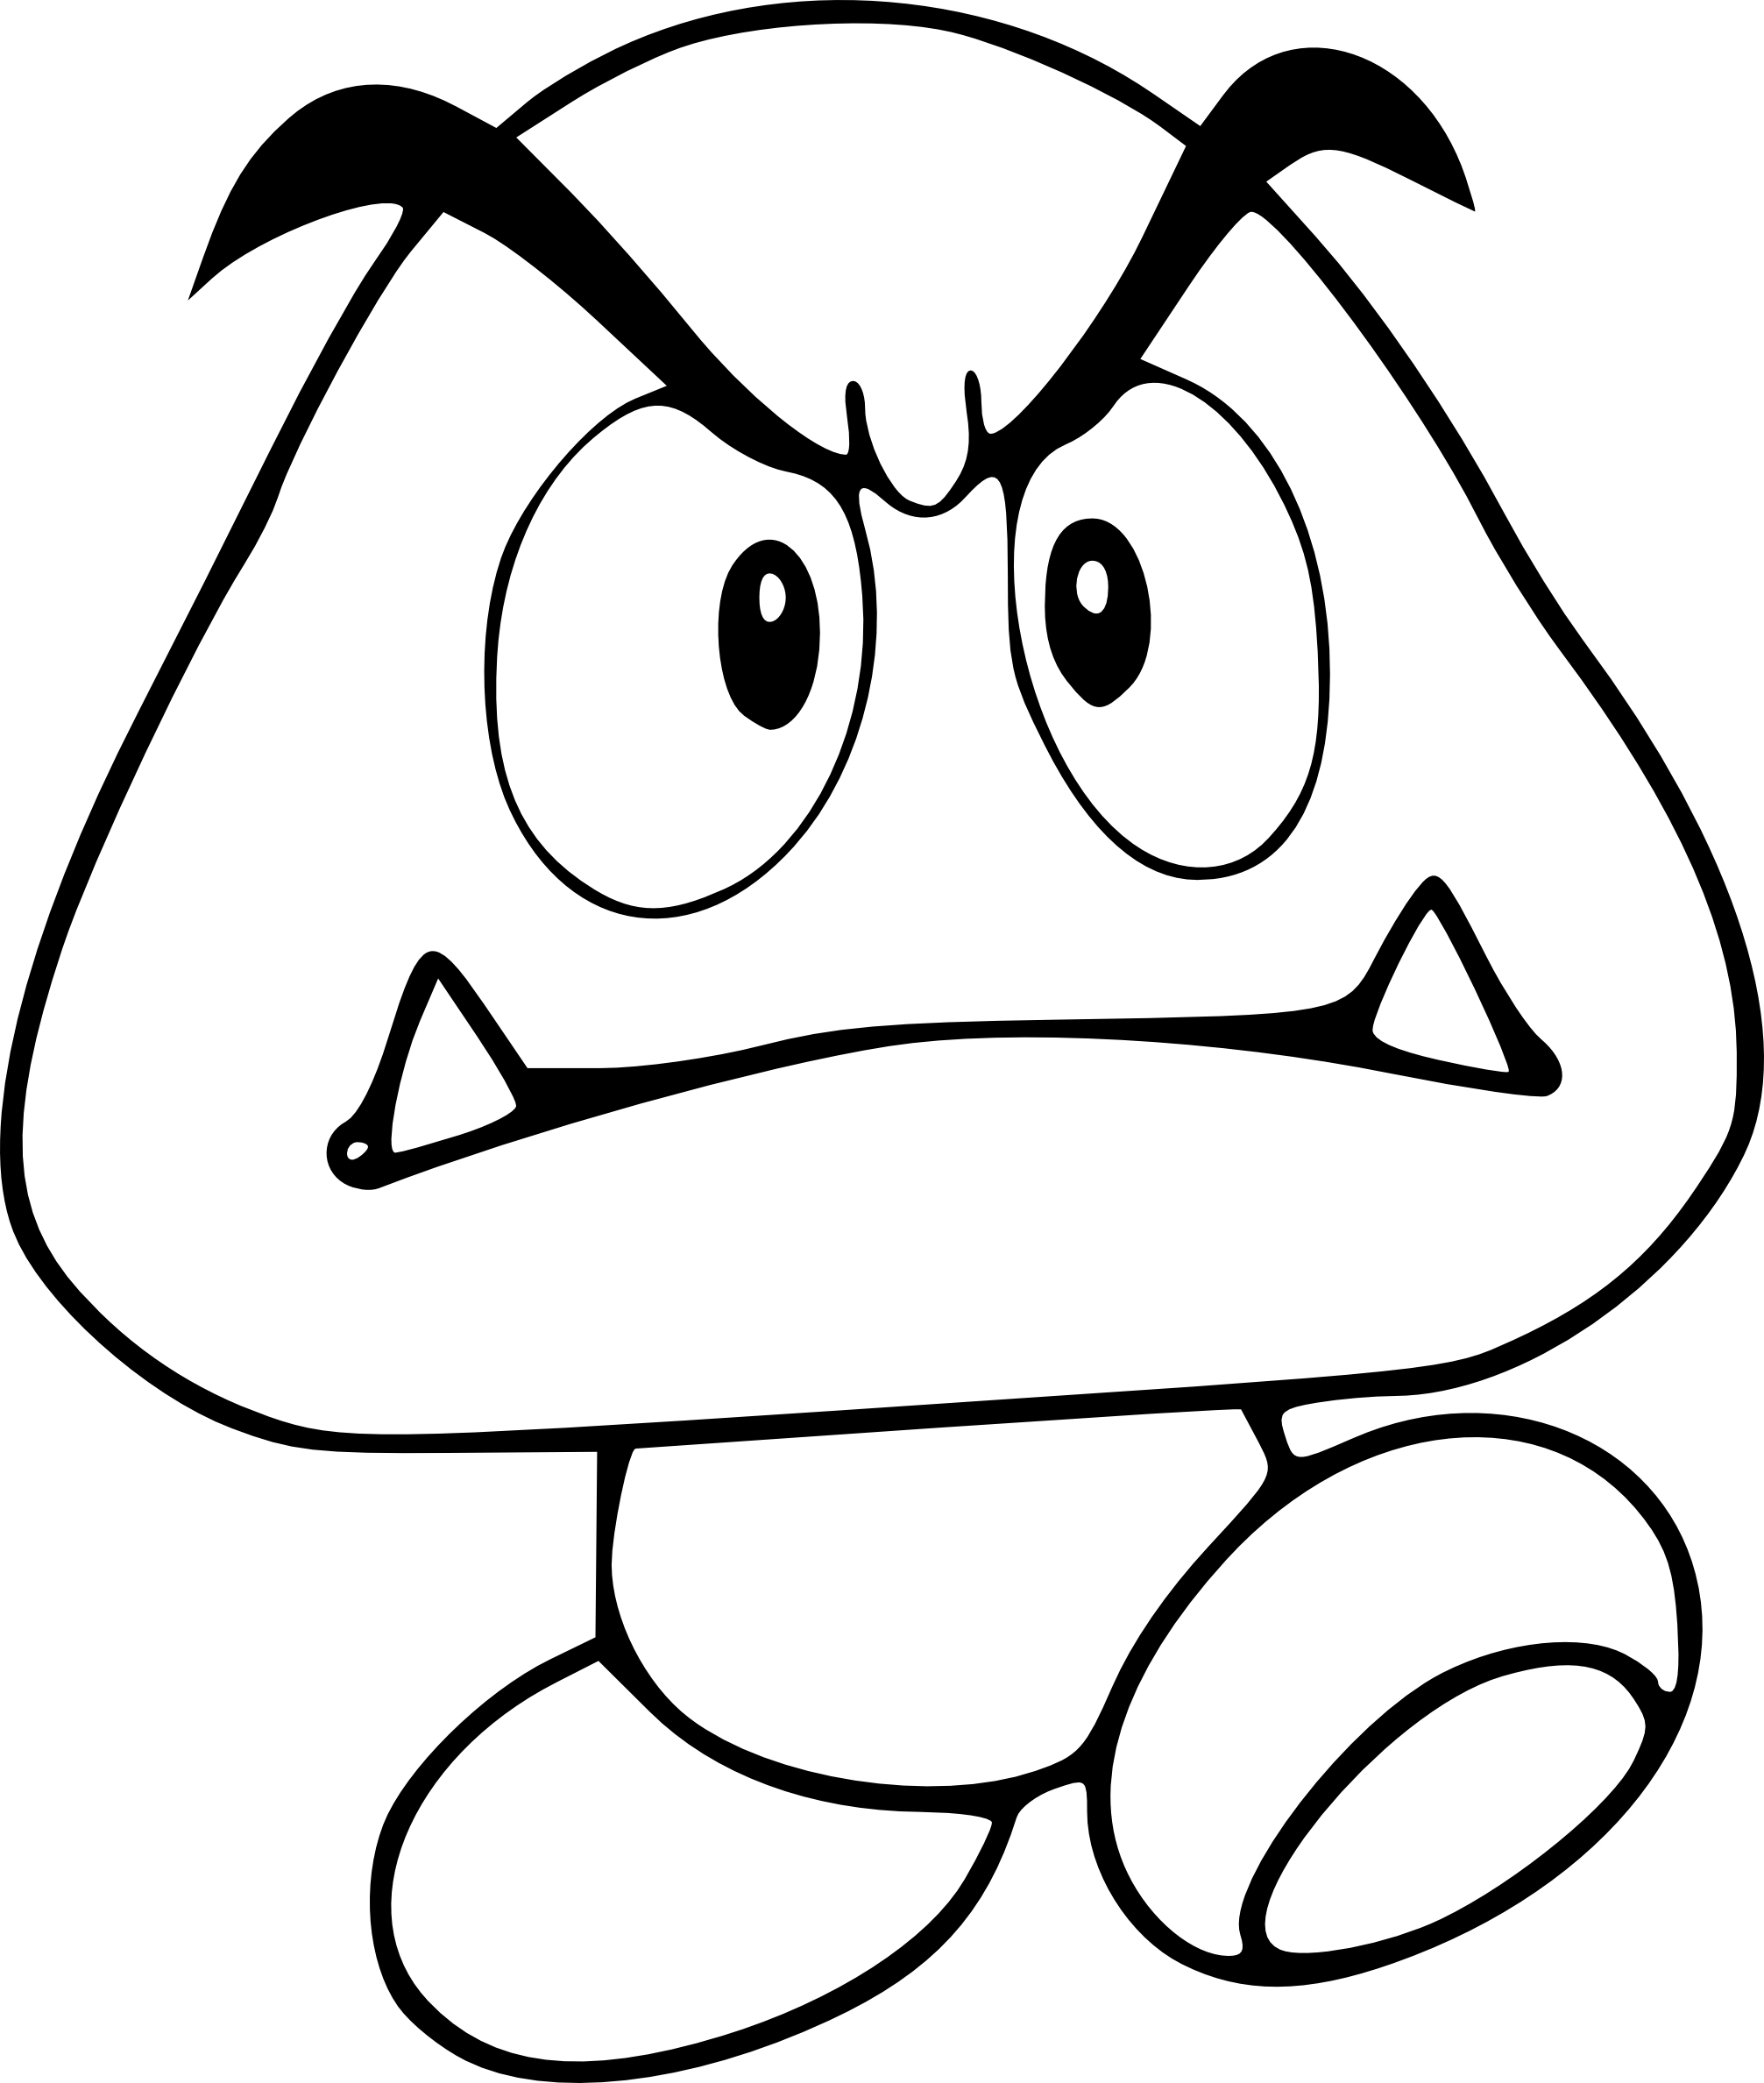 Coloriage Goomba personnage de Mario à imprimer